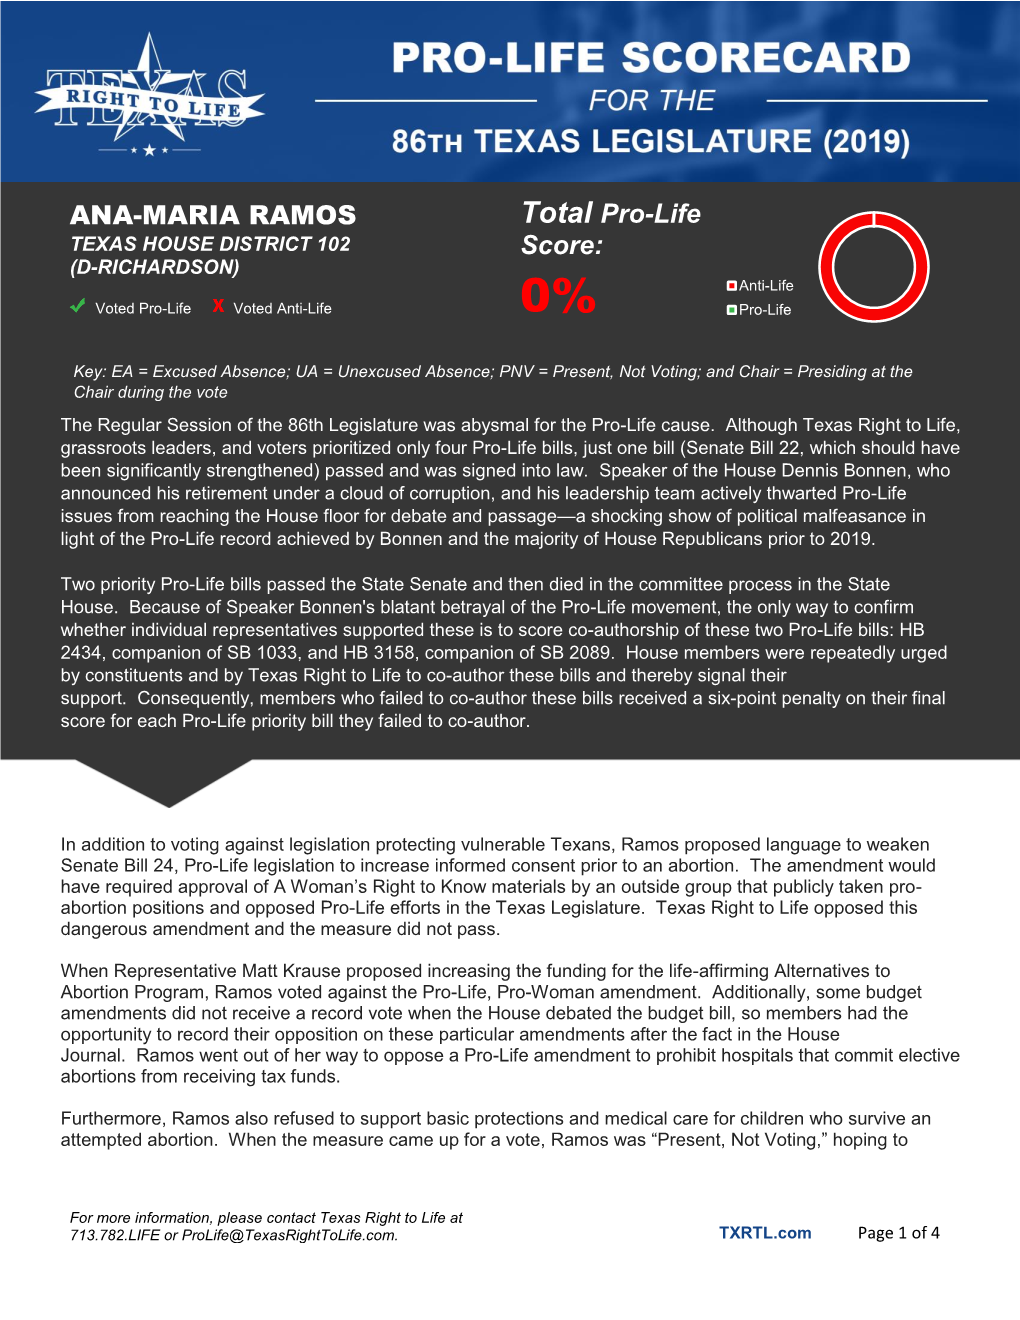 ANA-MARIA RAMOS Total Pro-Life Score